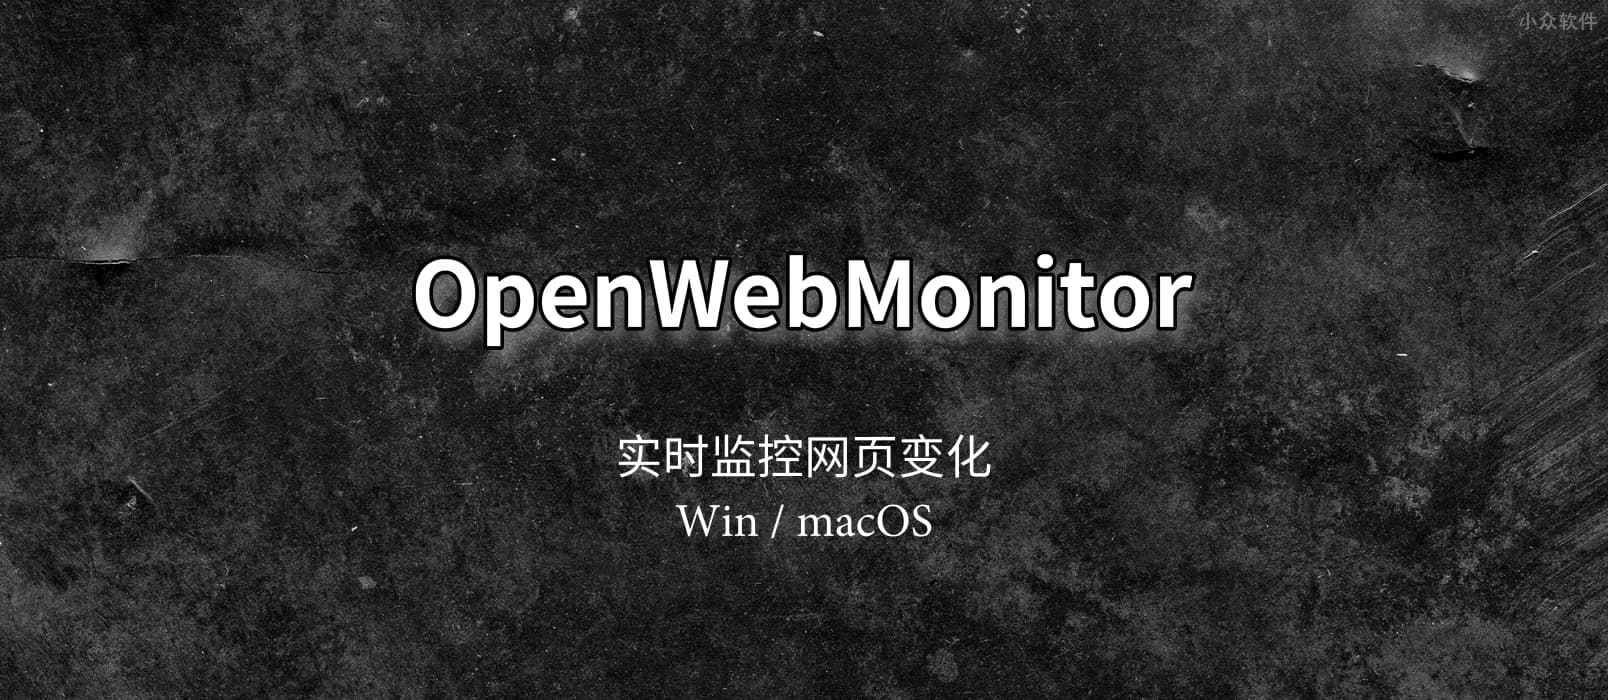 OpenWebMonitor - 实时监控网页变化，并报警通知[Win/macOS] 1